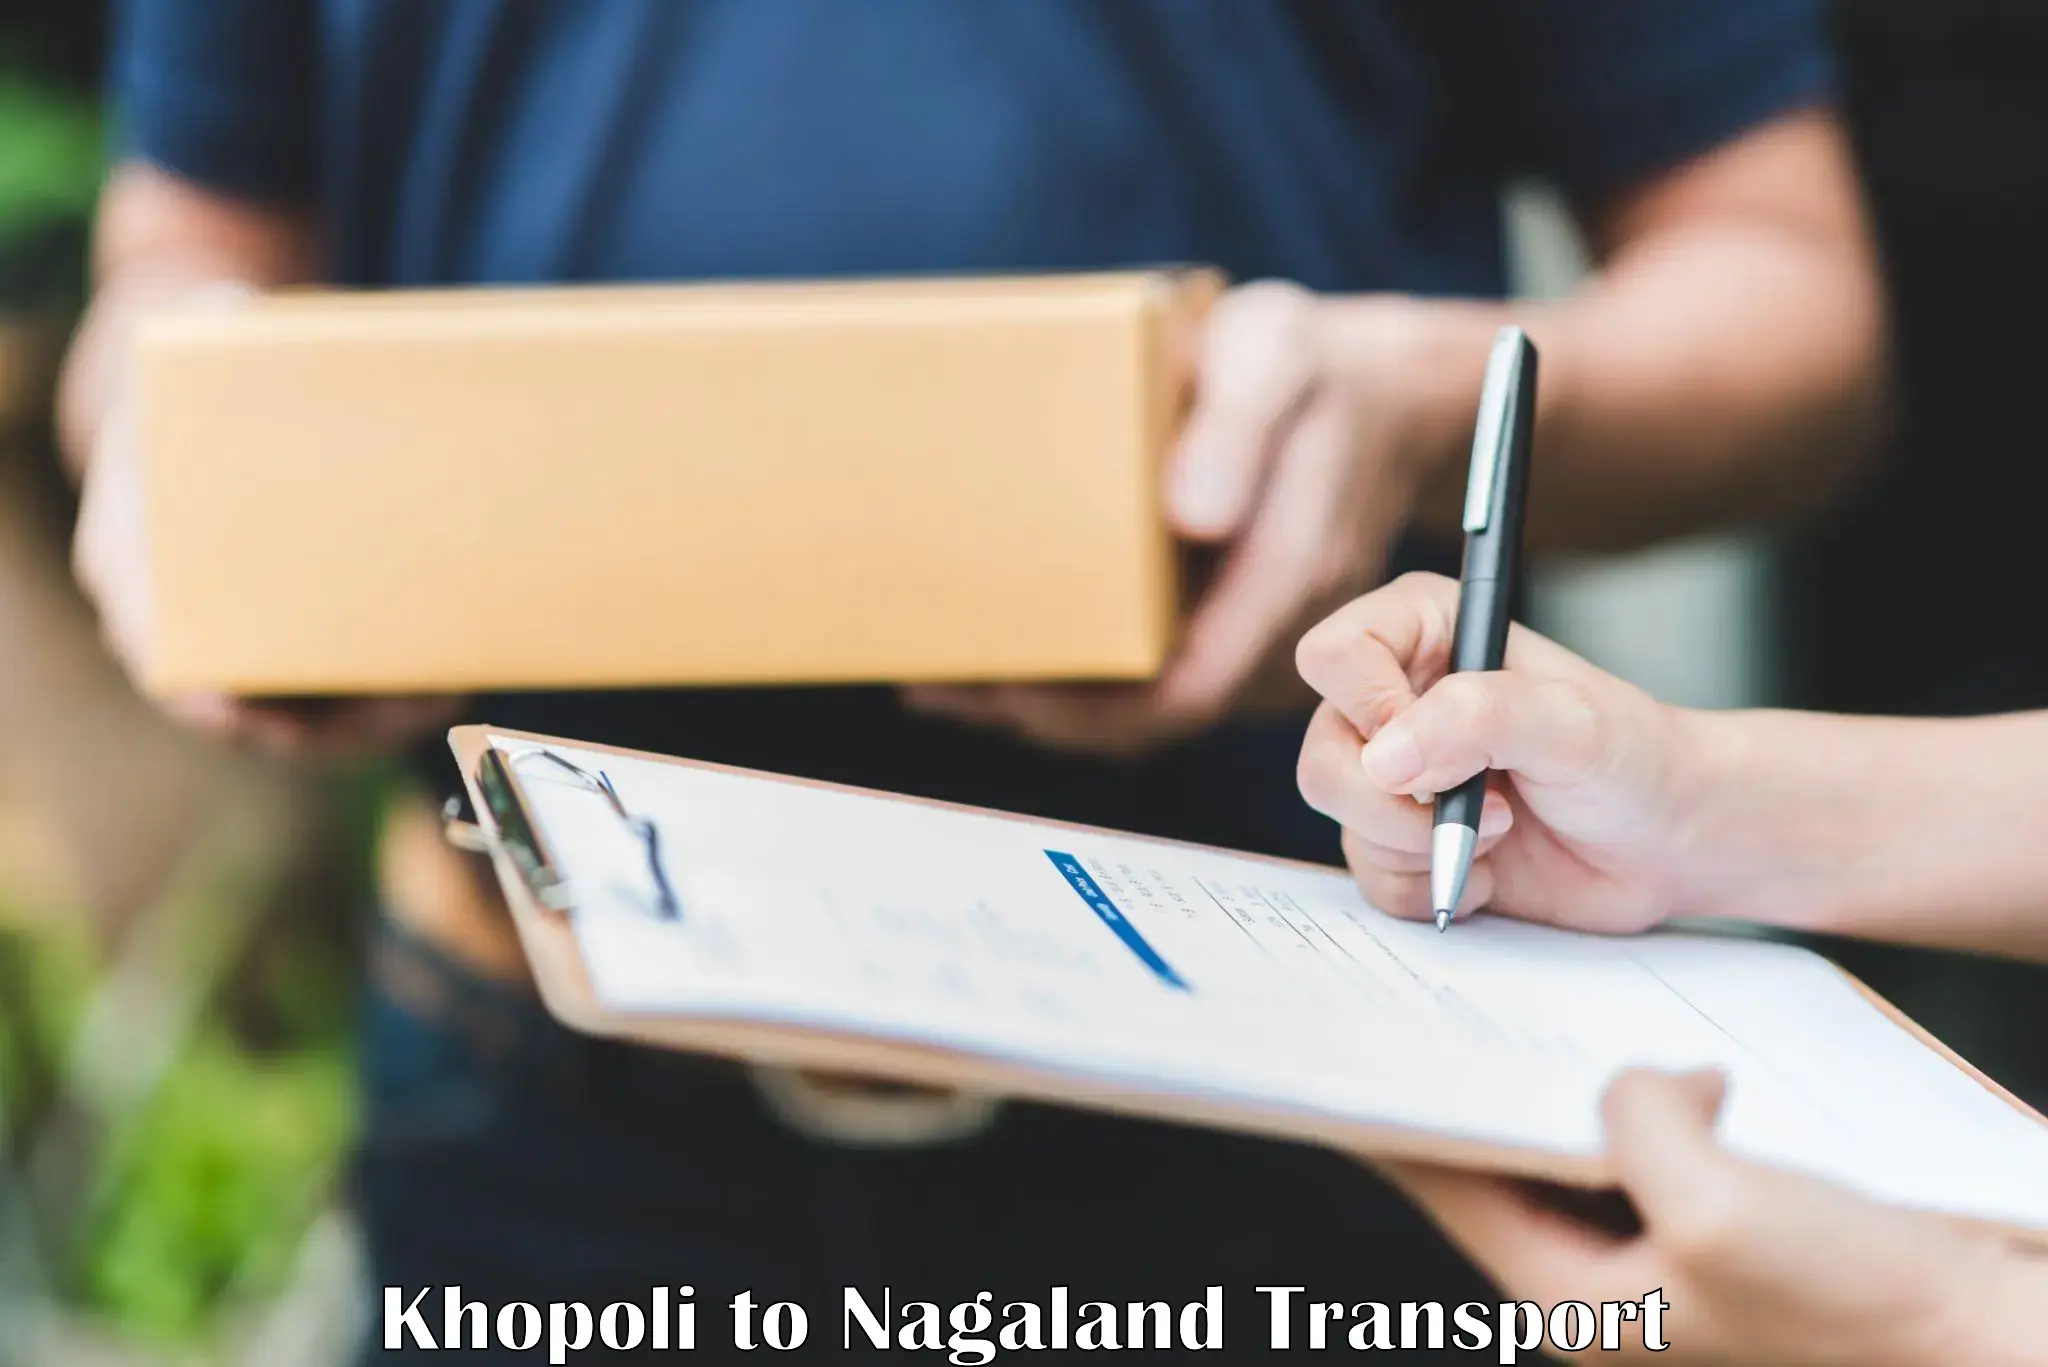 Two wheeler parcel service Khopoli to Dimapur